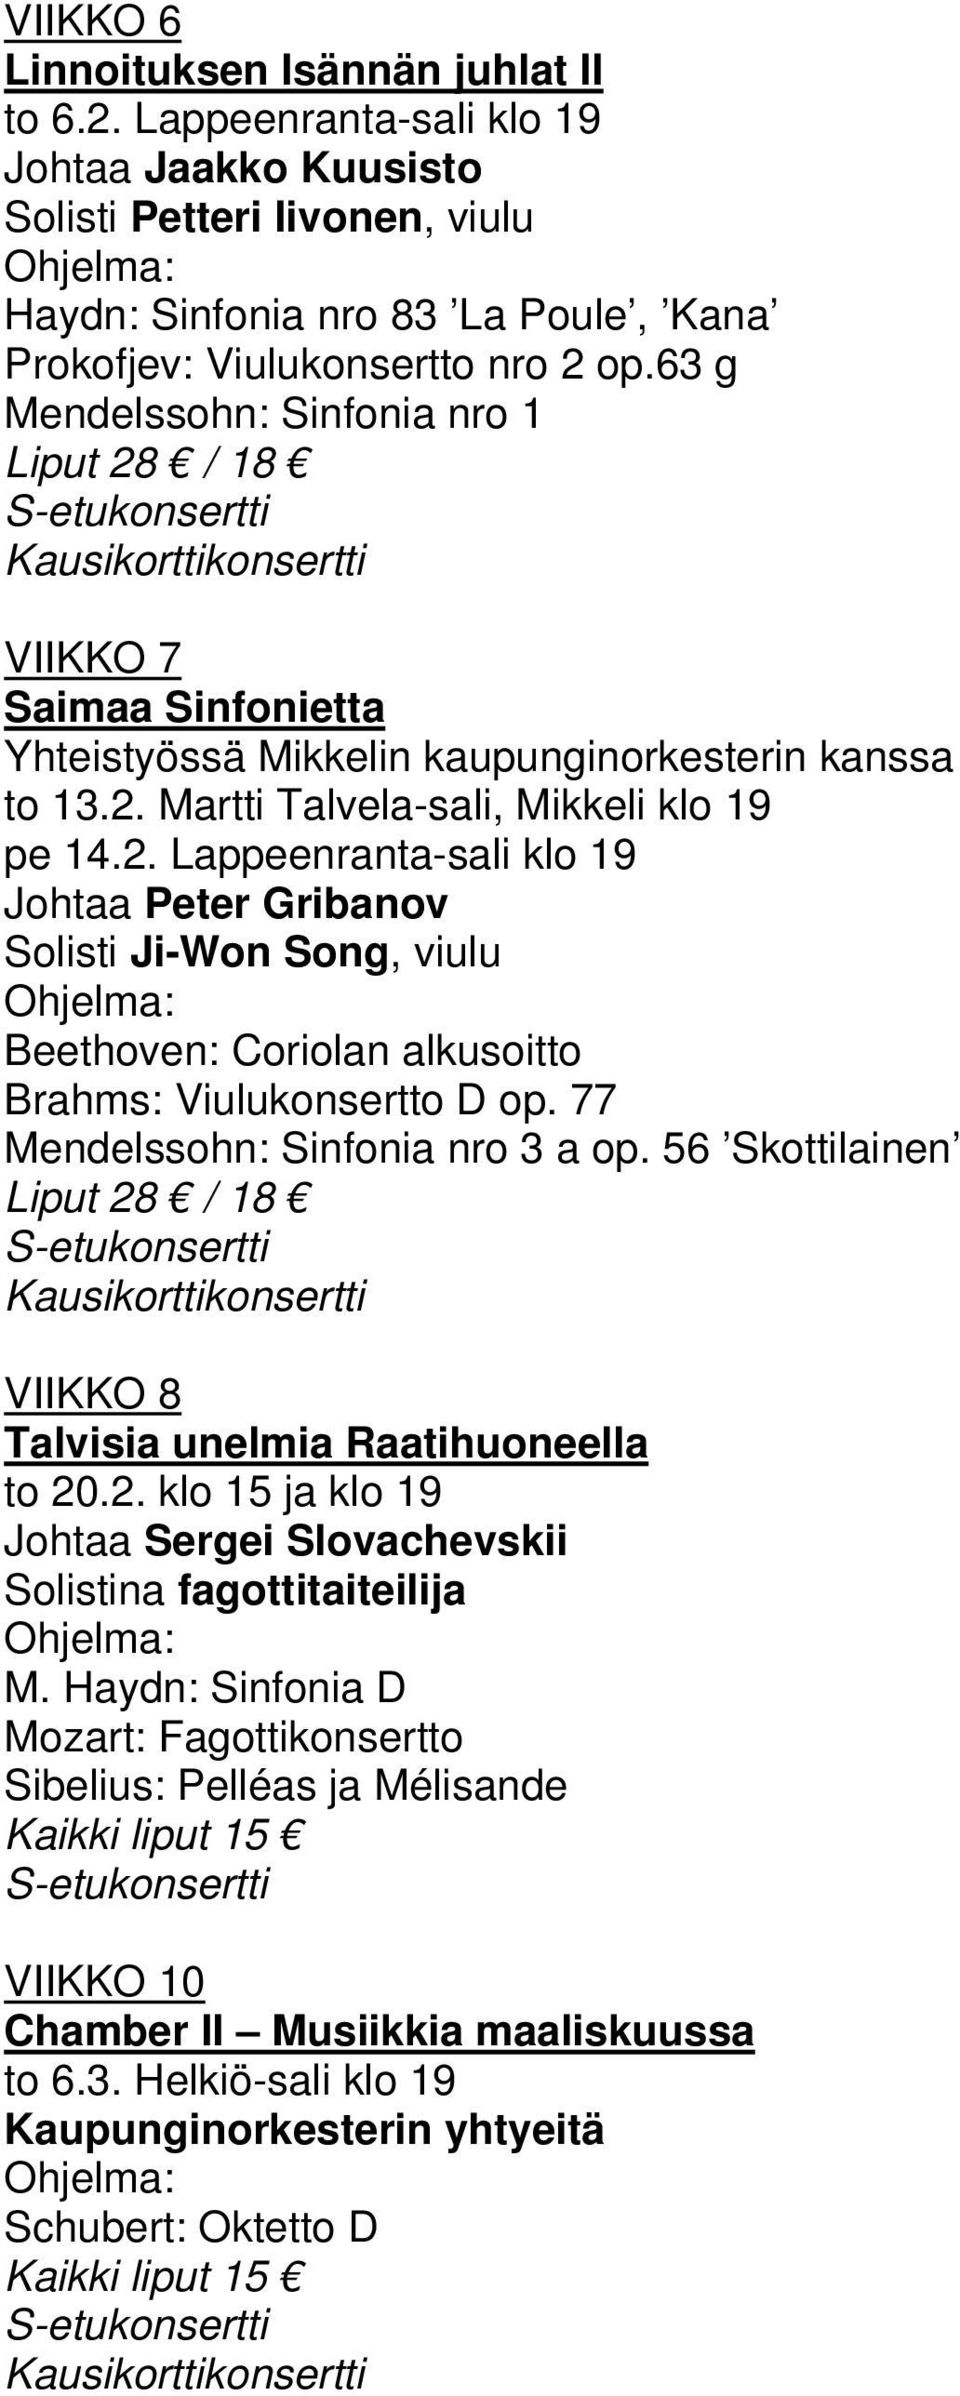 77 Mendelssohn: Sinfonia nro 3 a op. 56 Skottilainen Liput 28 / 18 Kausikorttikonsertti VIIKKO 8 Talvisia unelmia Raatihuoneella to 20.2. klo 15 ja klo 19 Johtaa Sergei Slovachevskii Solistina fagottitaiteilija M.